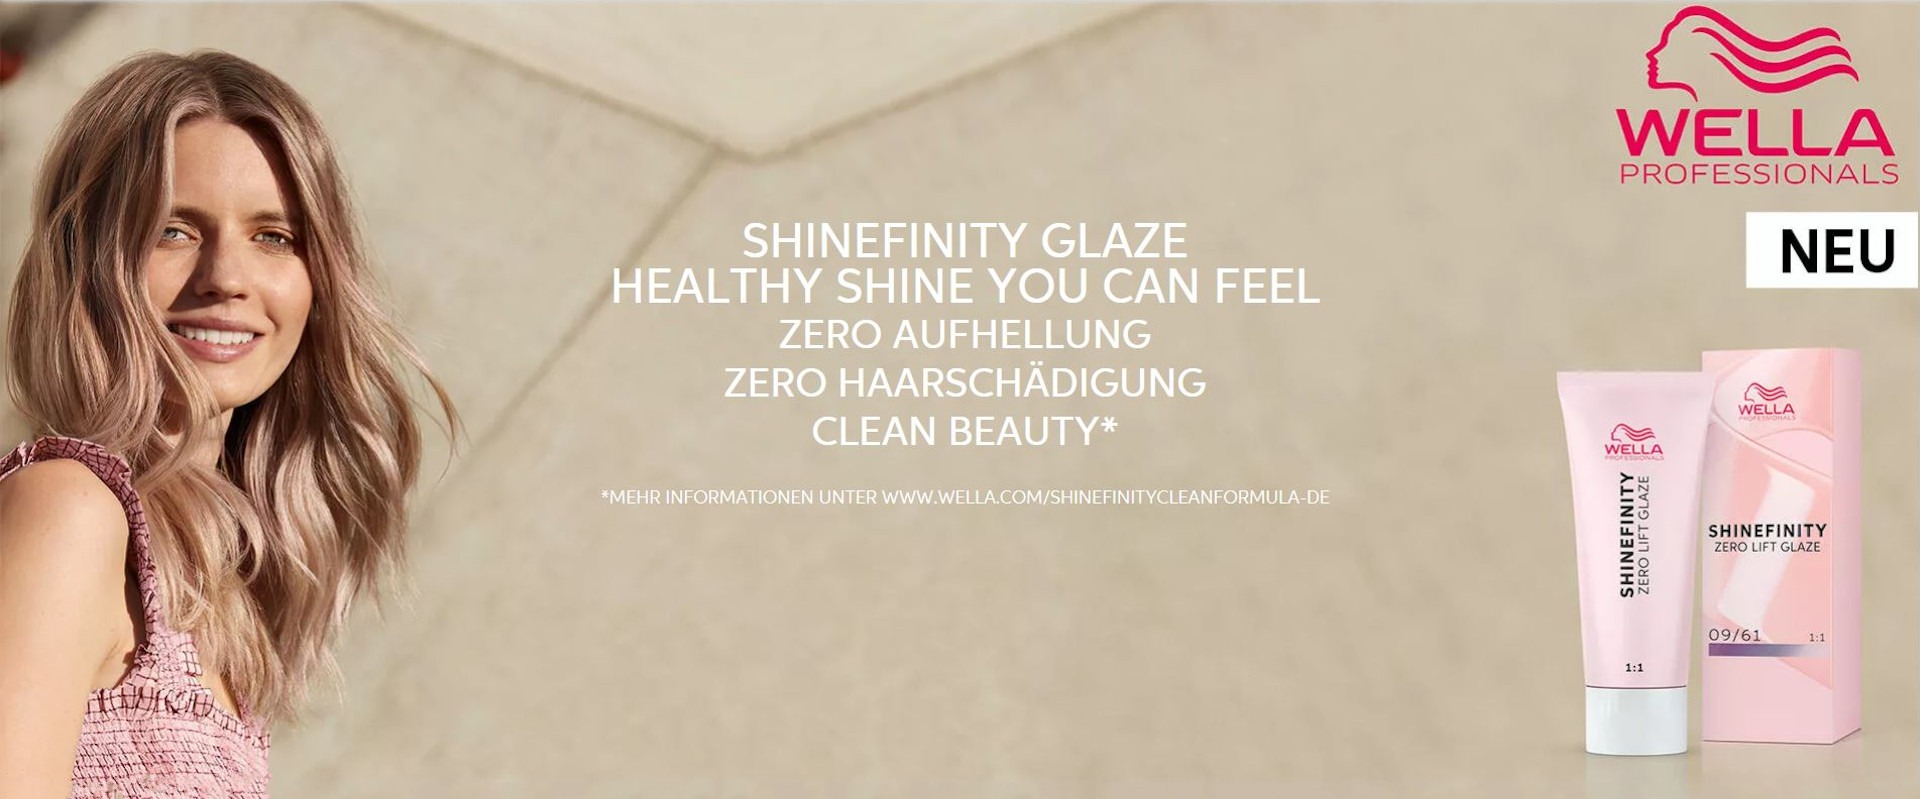 Shinefinity Glaze, die Tönungslasur von Wella. keine Aufhellung, keine Haarschädigung, einfach ein gesundes Haargefühl. Erhältlich und in Anwendung bei Salon Patricia - Top-Frisuren, Fashion-Schnitts für jede Gelegenheit